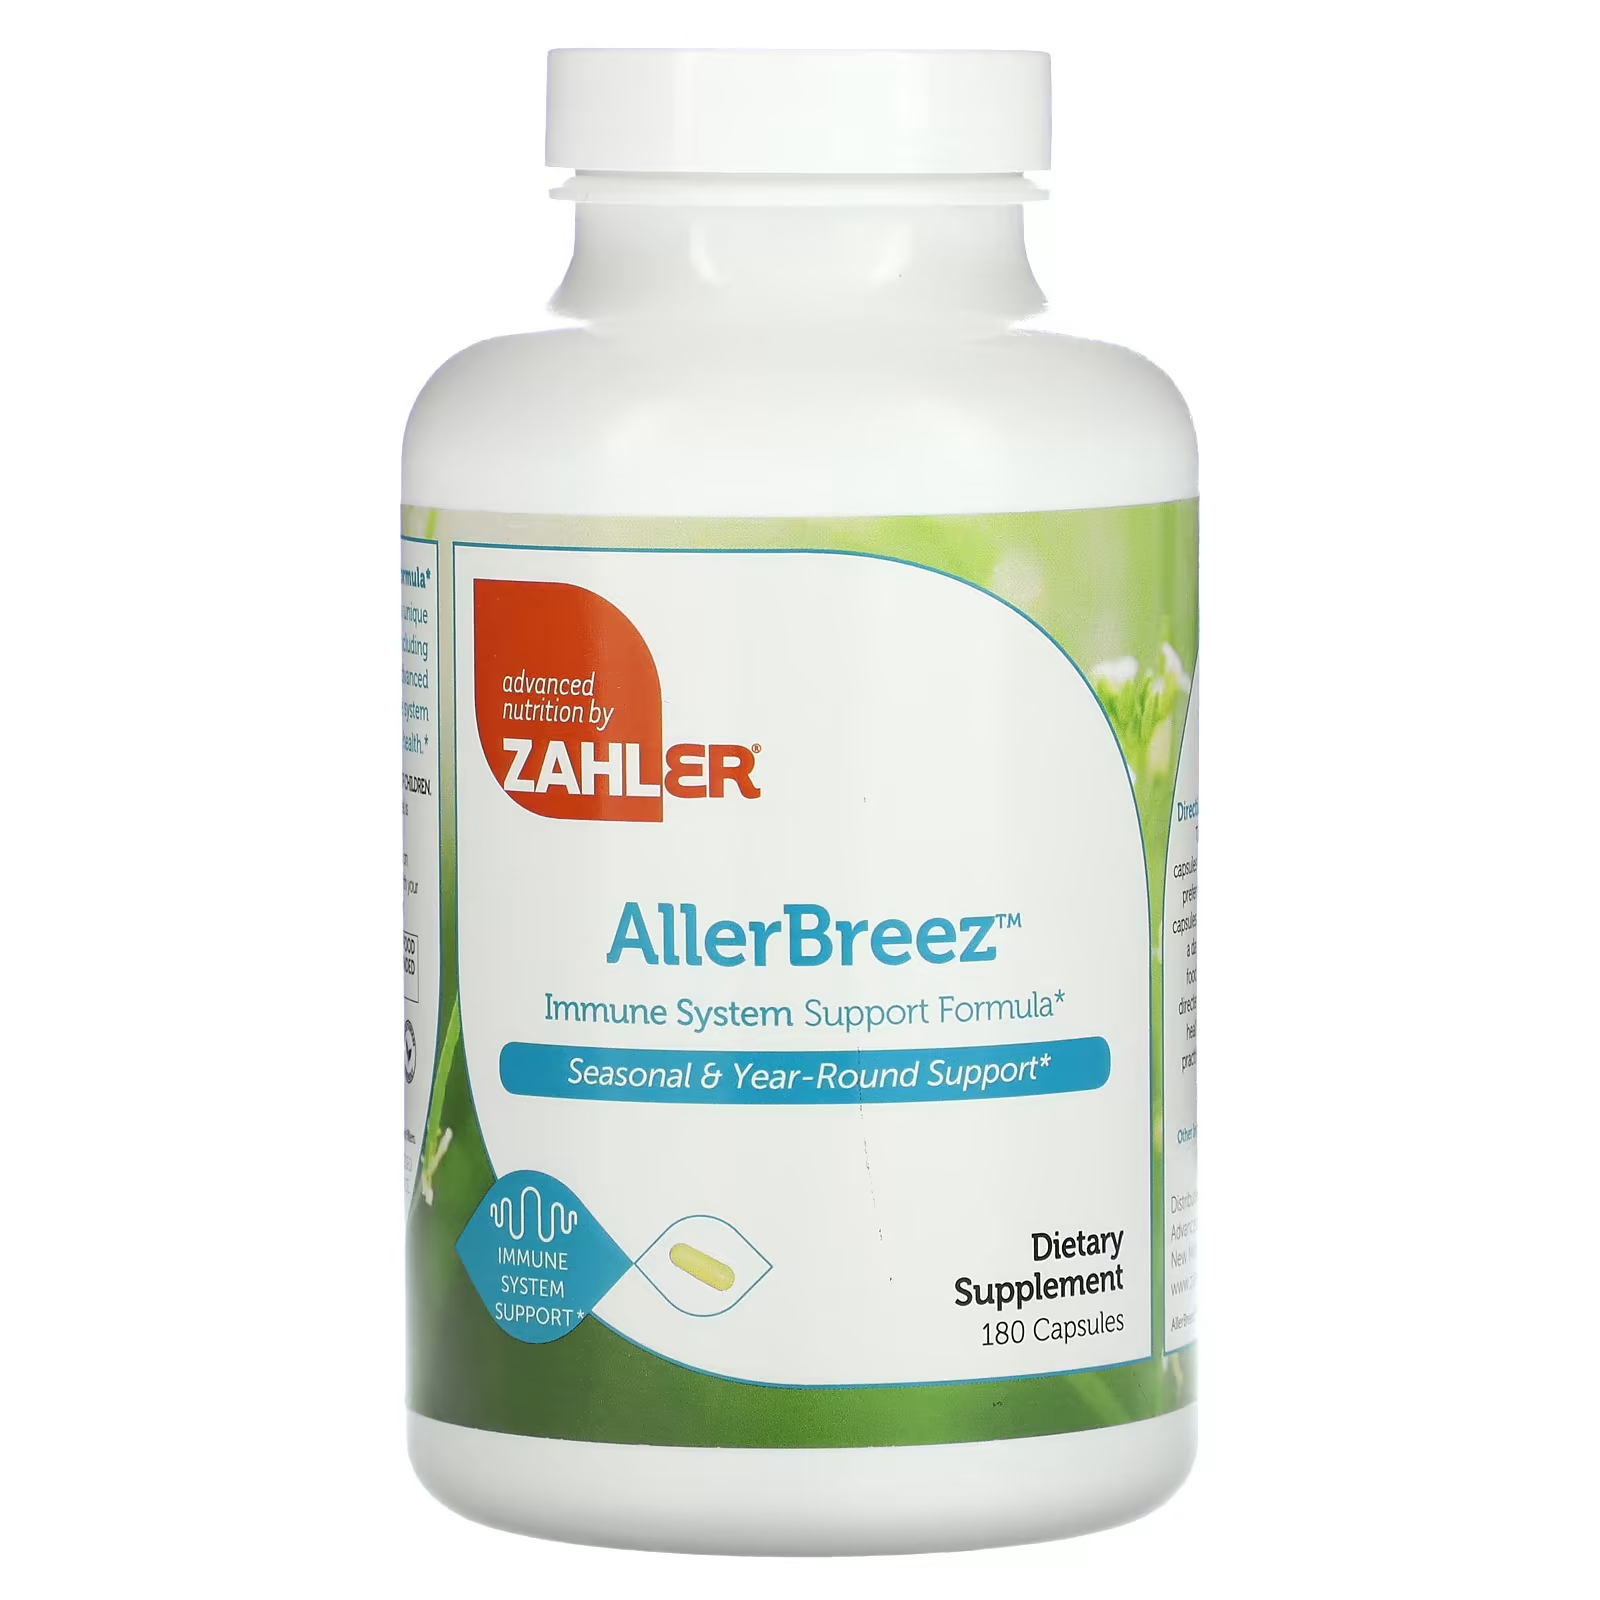 Пищевая добавка Zahler AllergBreeze формула поддержки иммунной системы, 180 капсул поддержка иммунной системы детей zahler виноград 60 жевательных таблеток